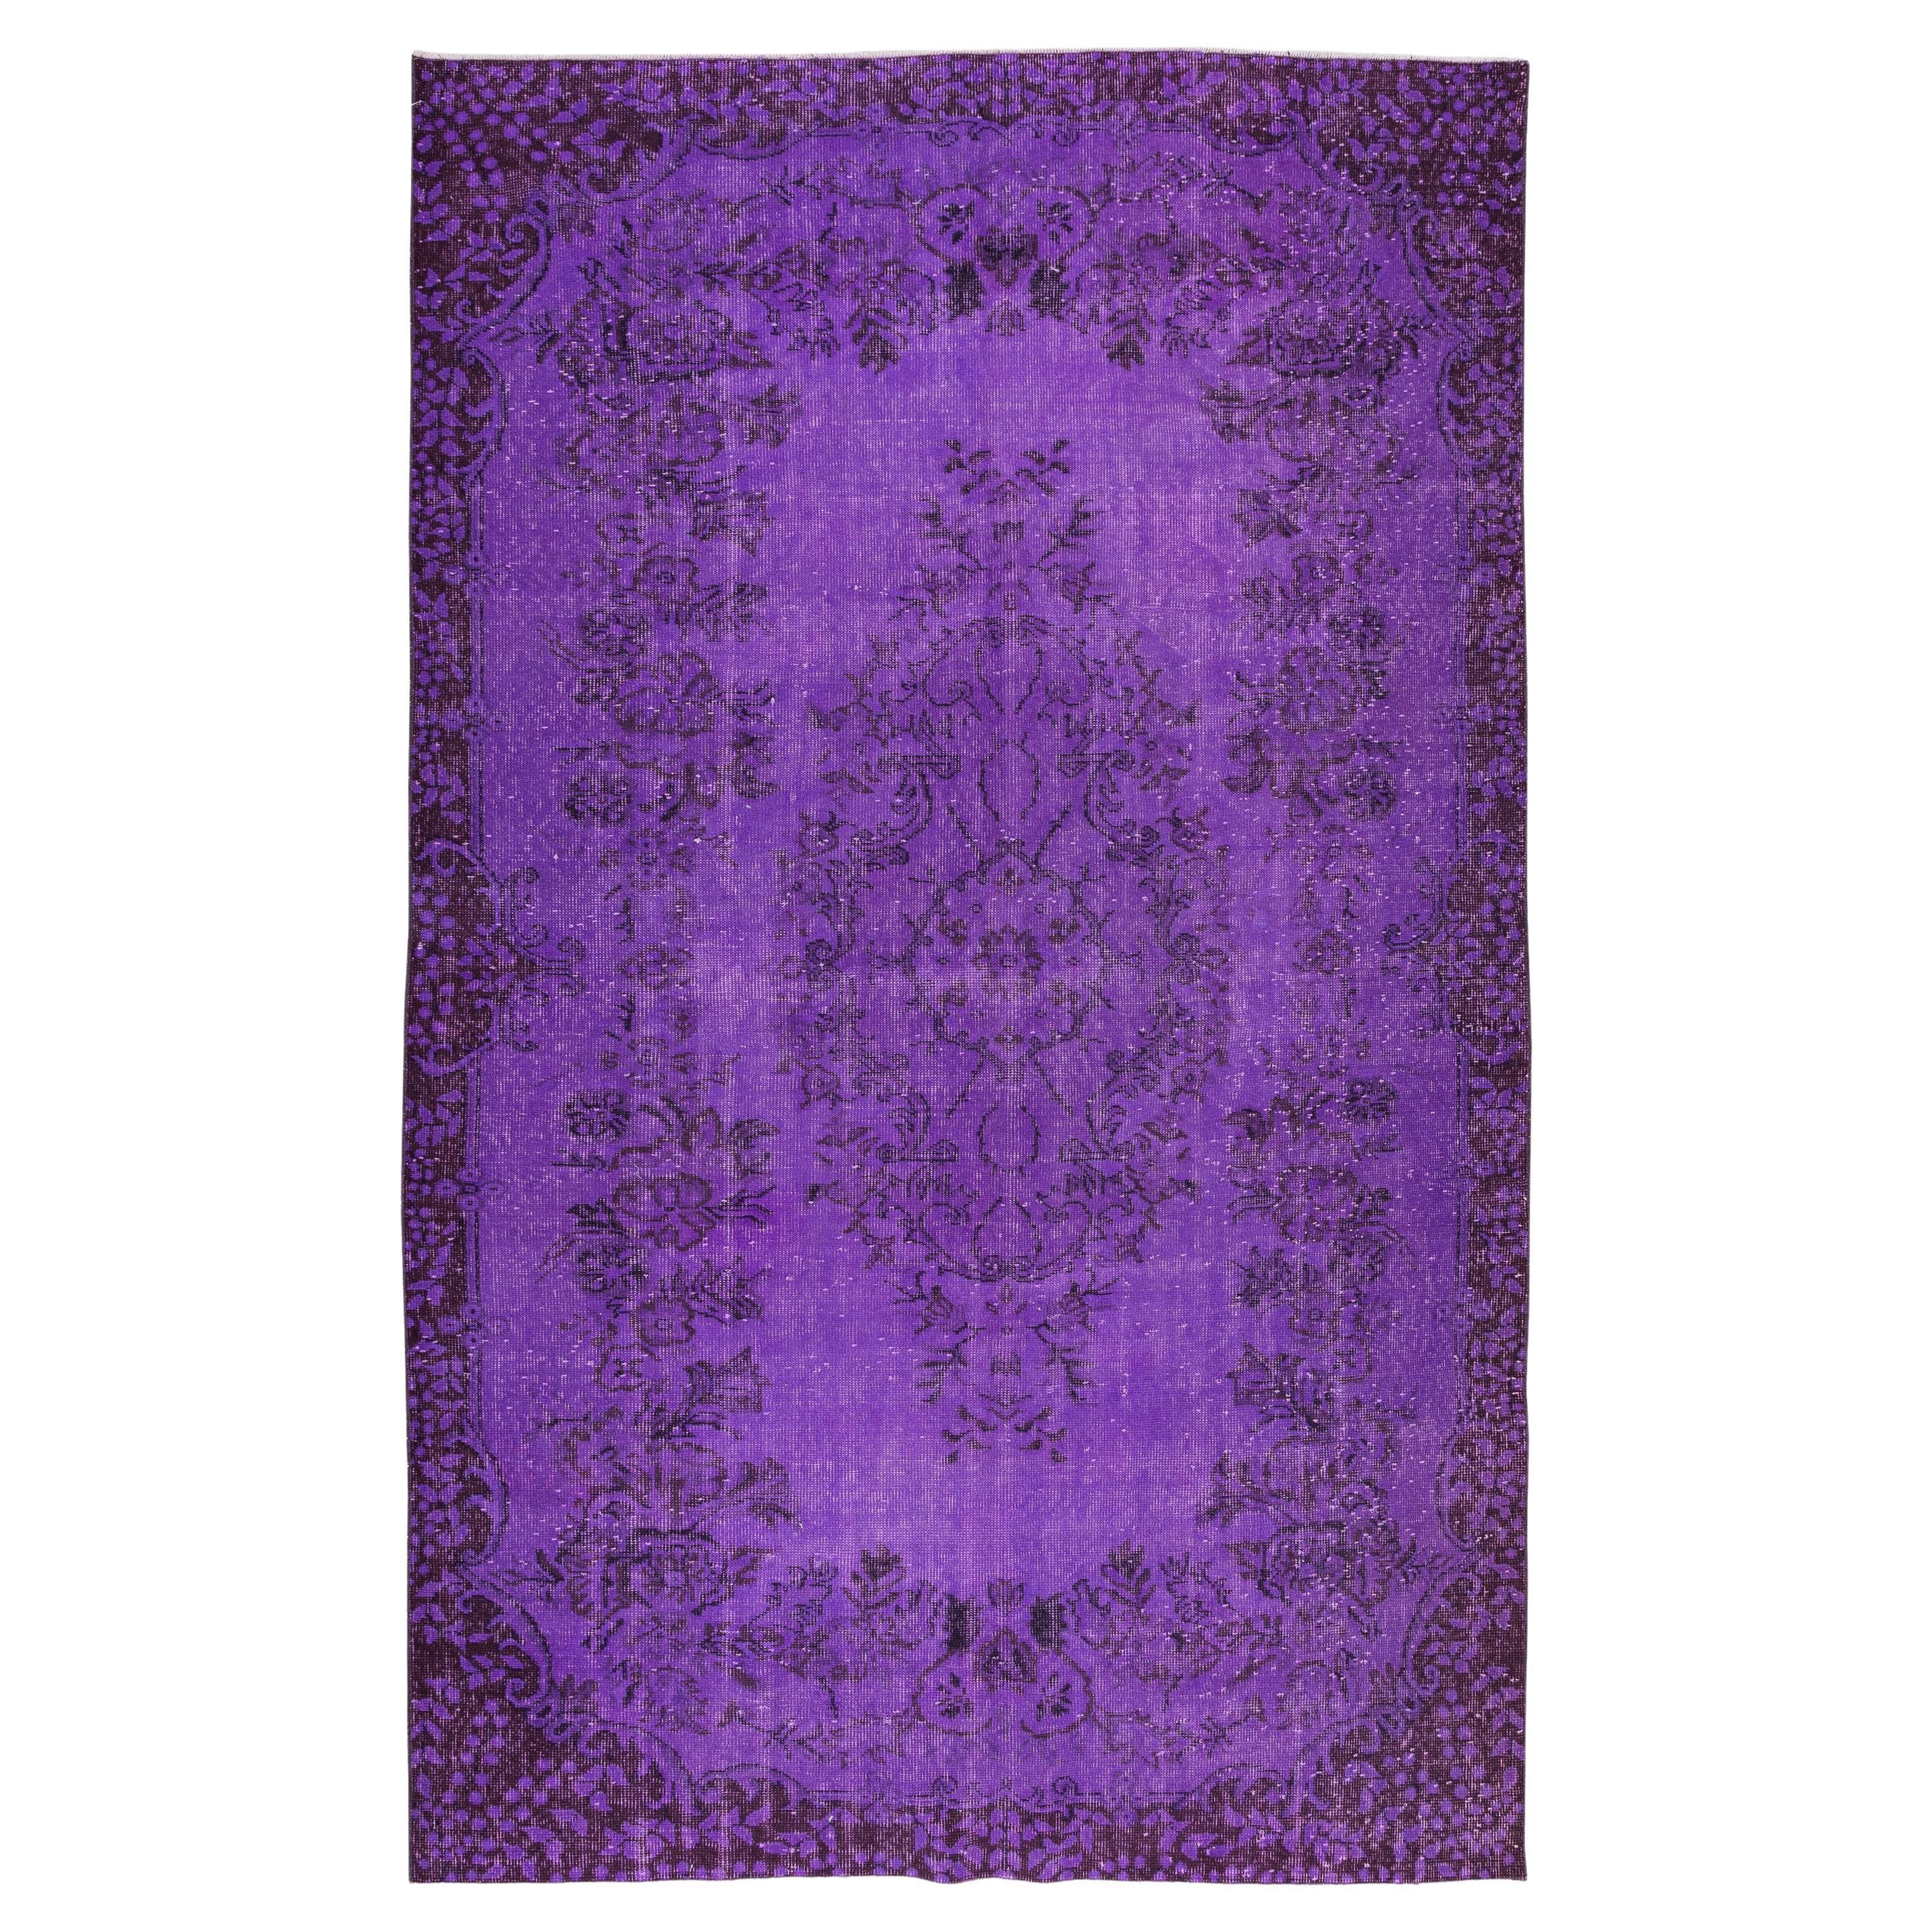 5.8x9.2 Ft Contemporary Handmade Turkish Vintage Wool Area Rug ReDyed in Purple (Tapis de laine vintage turc fait à la main et teinté en violet)